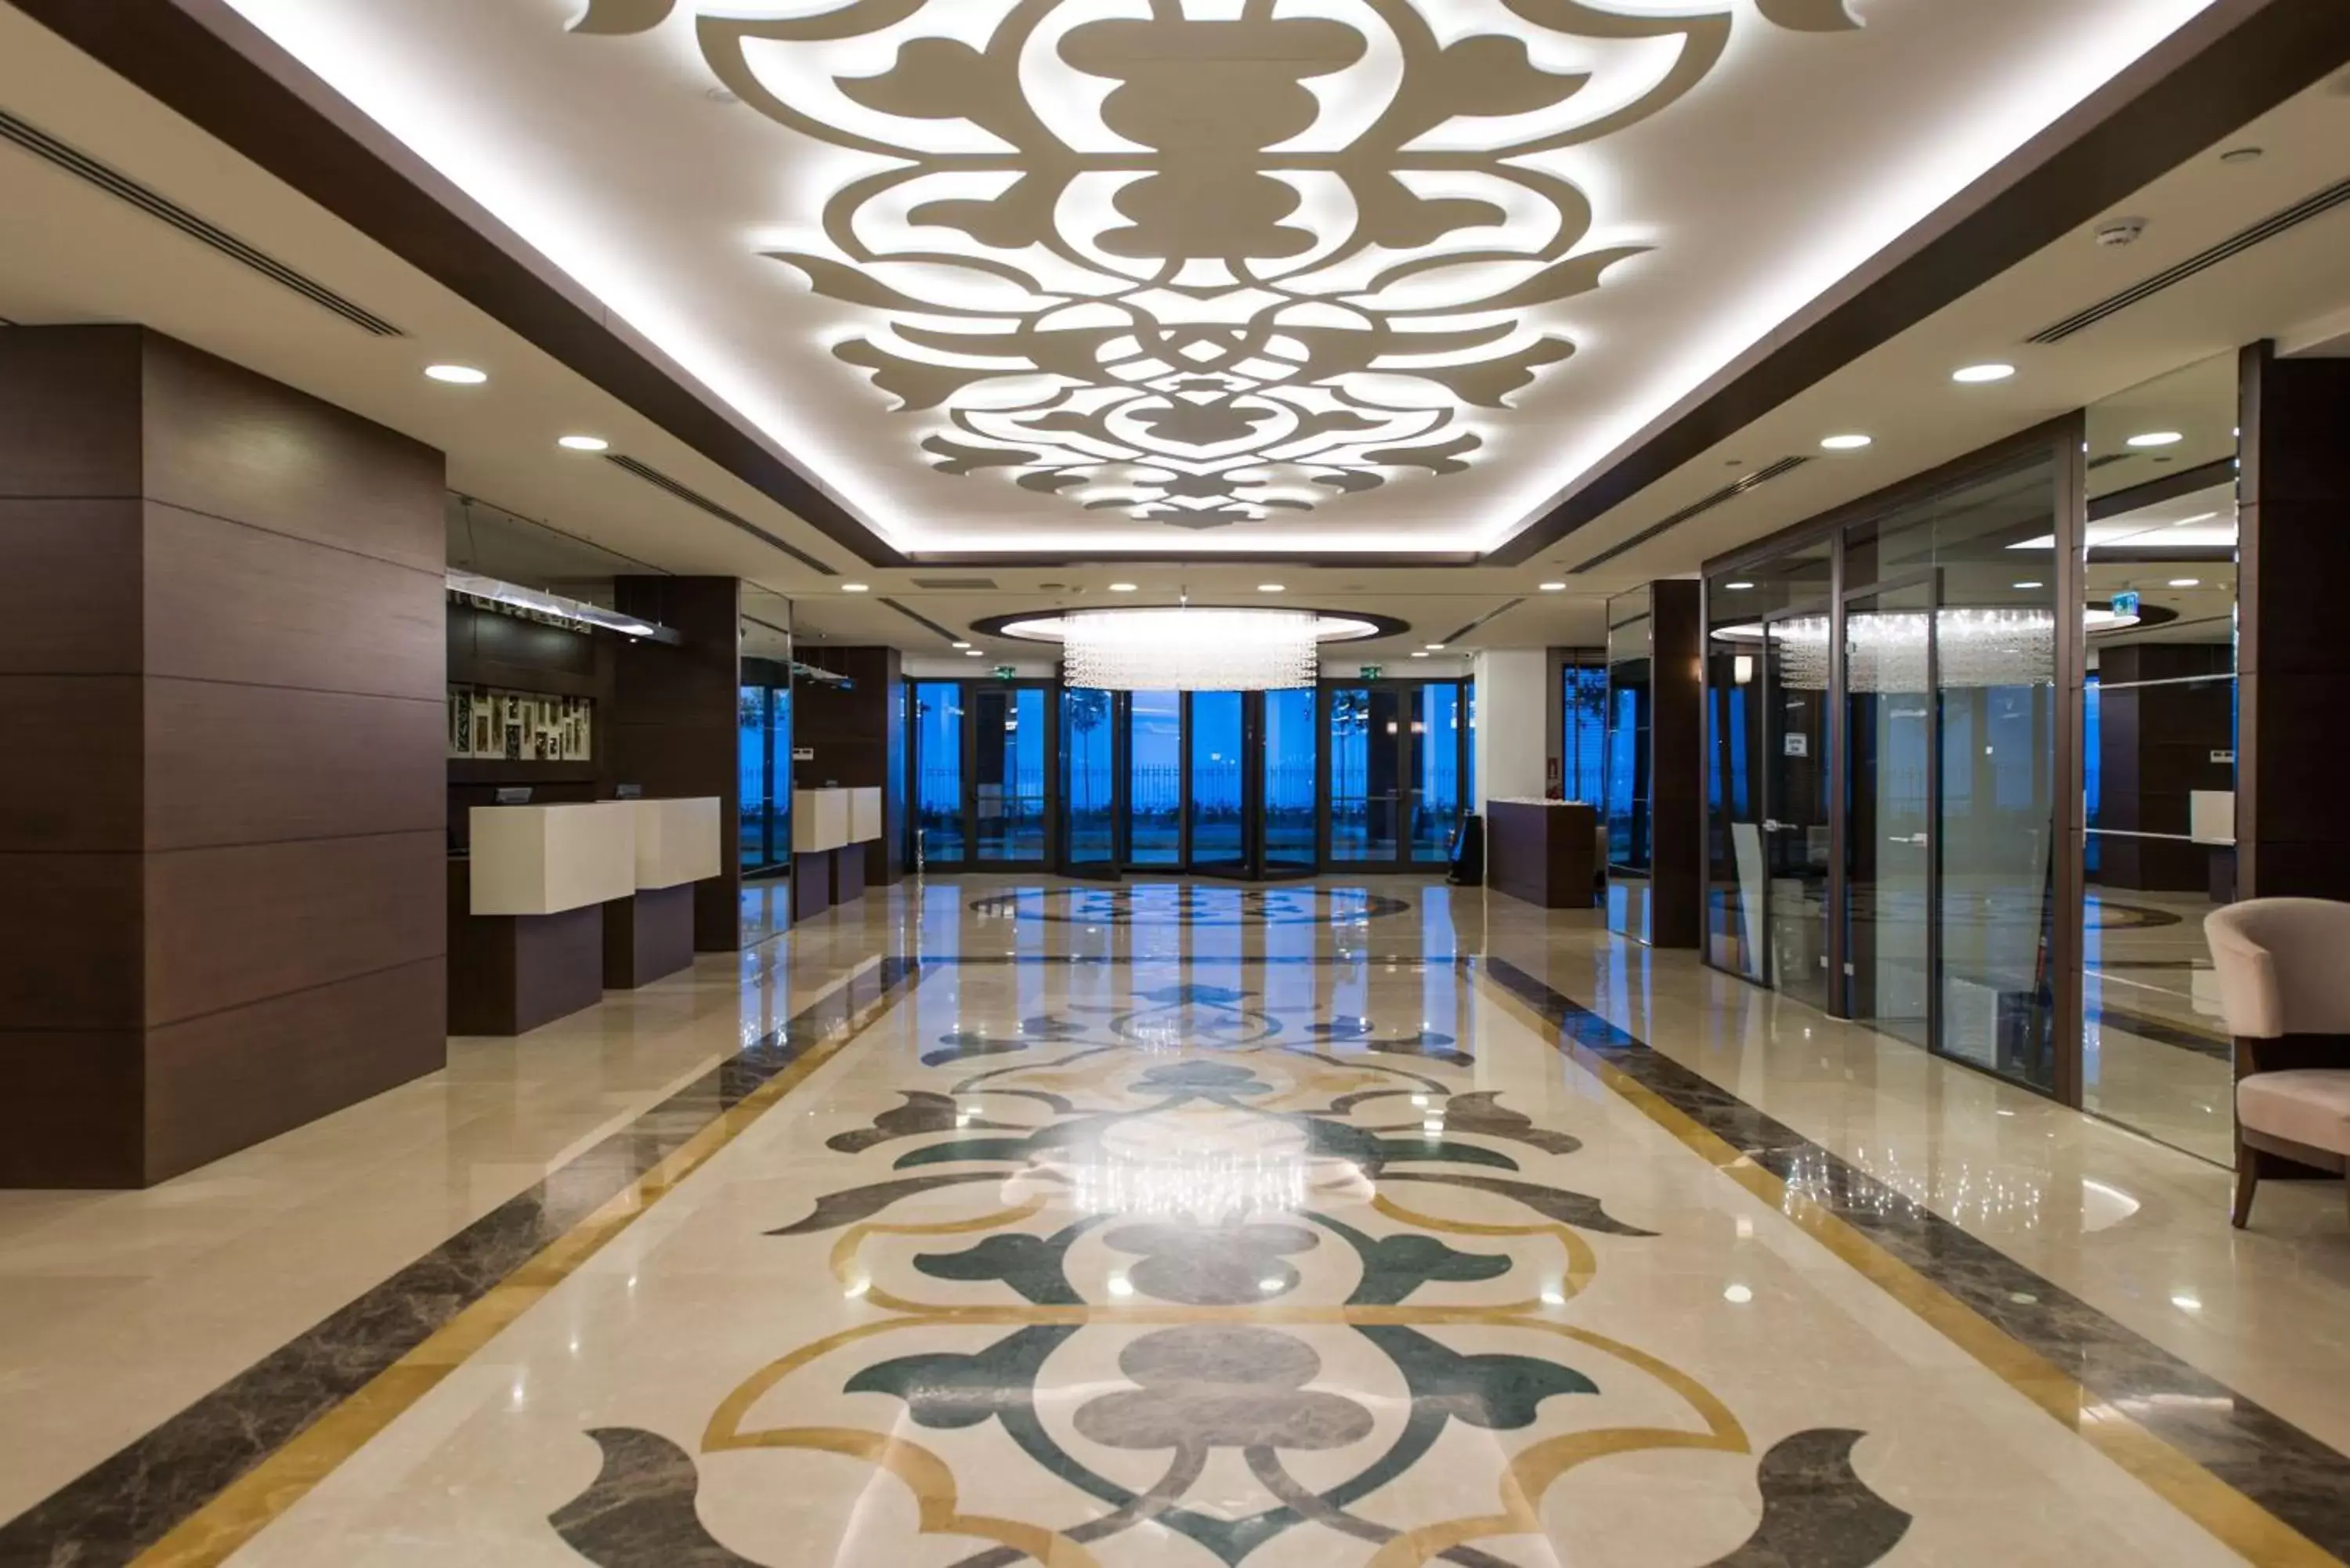 Lobby or reception, Lobby/Reception in Radisson Blu Hotel, Ordu